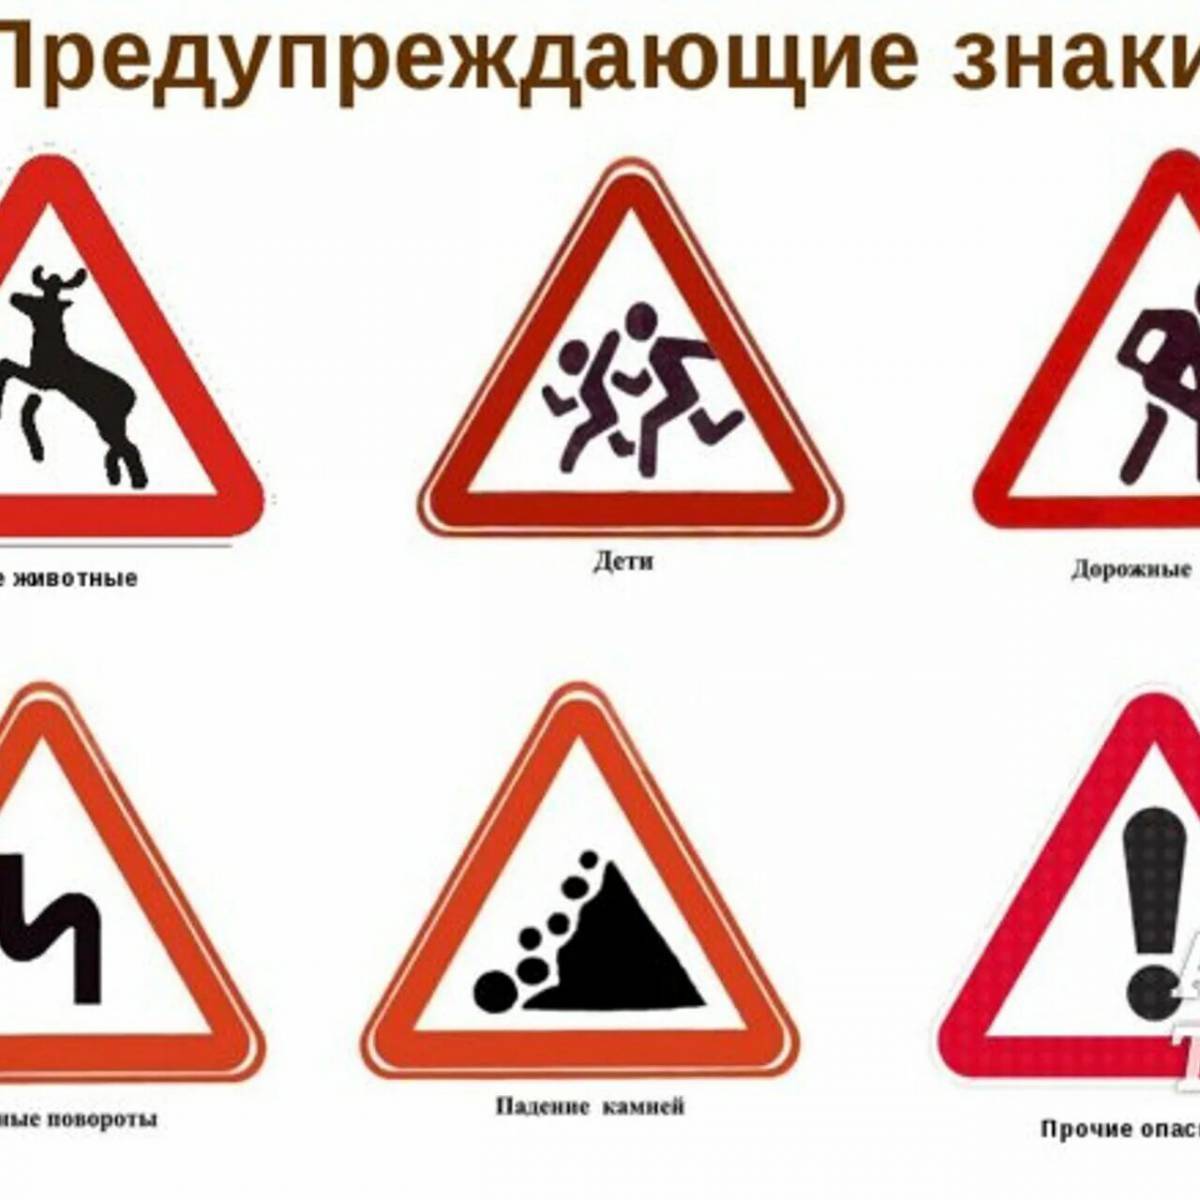 знаки для пешеходов картинки и их названия